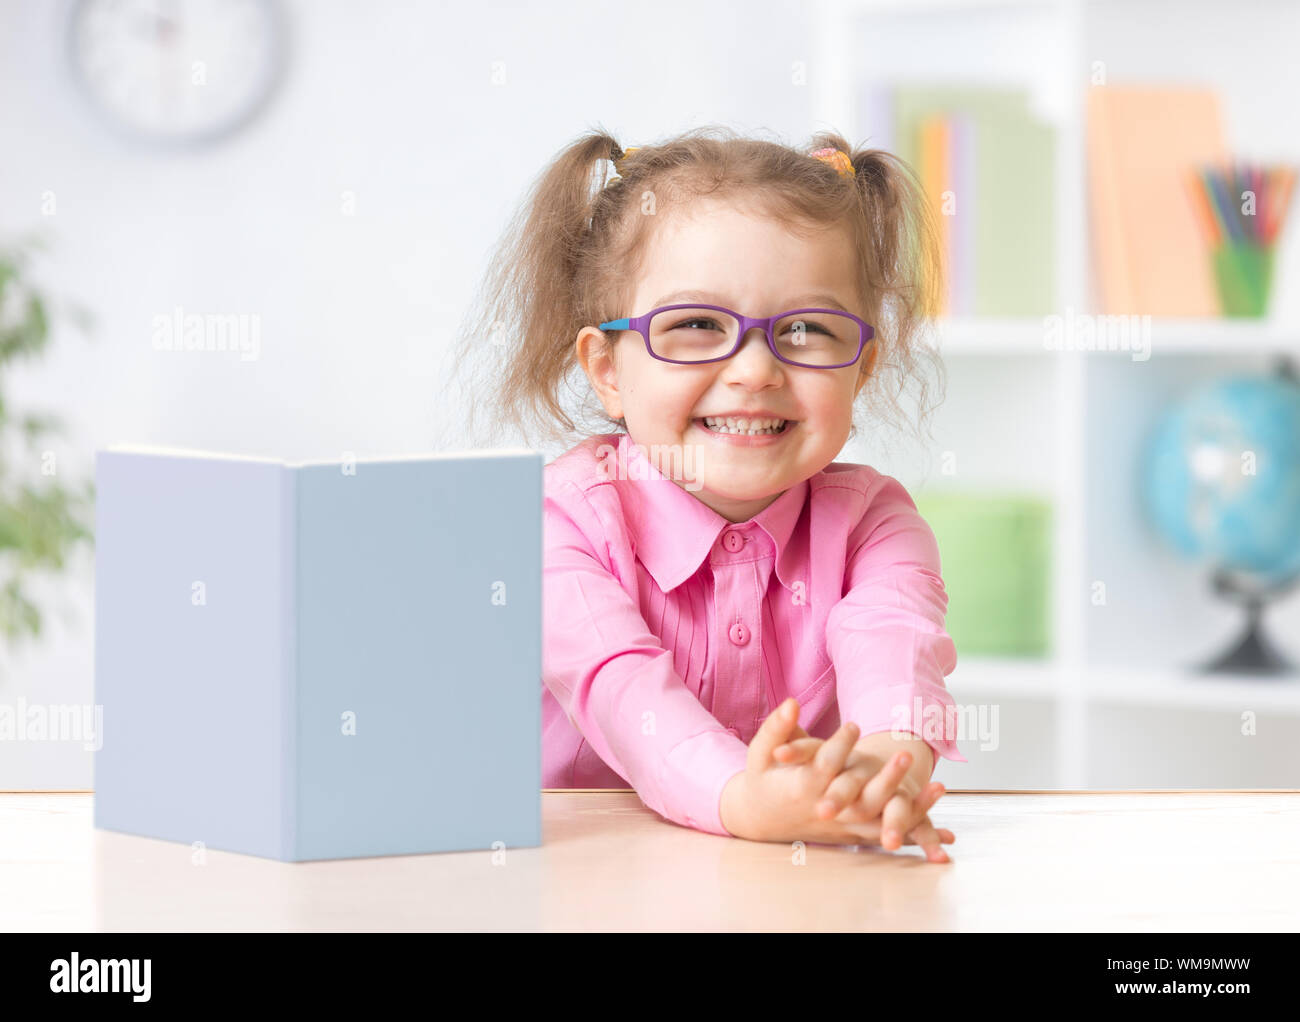 Happy kid girl à lunettes de lecture avec l'article livre sur sa table Banque D'Images